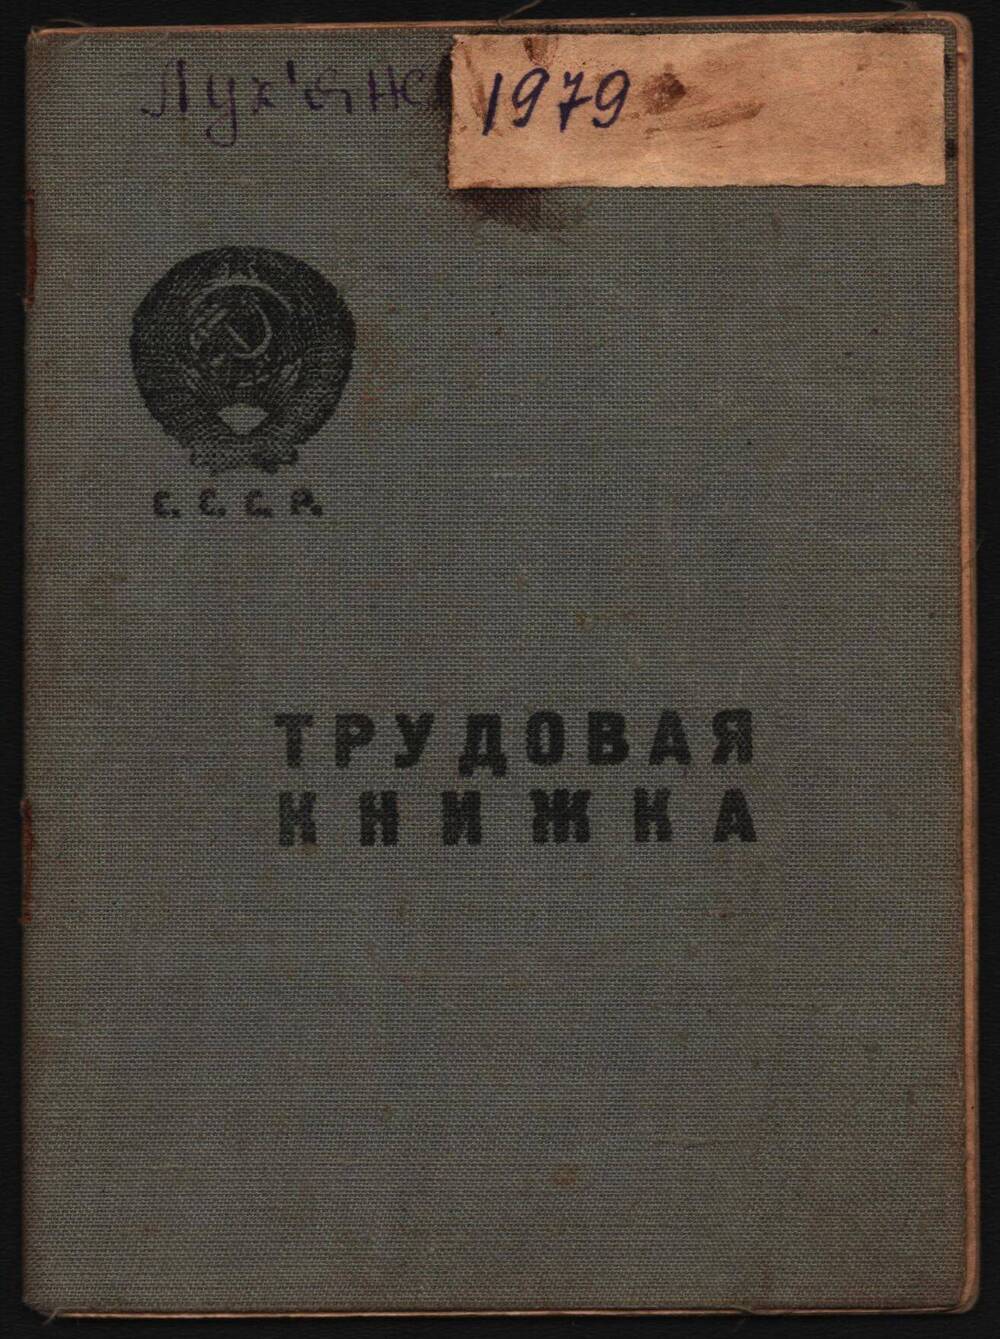 Трудовая книжка Лукьяненко Иосифа Антоновича.